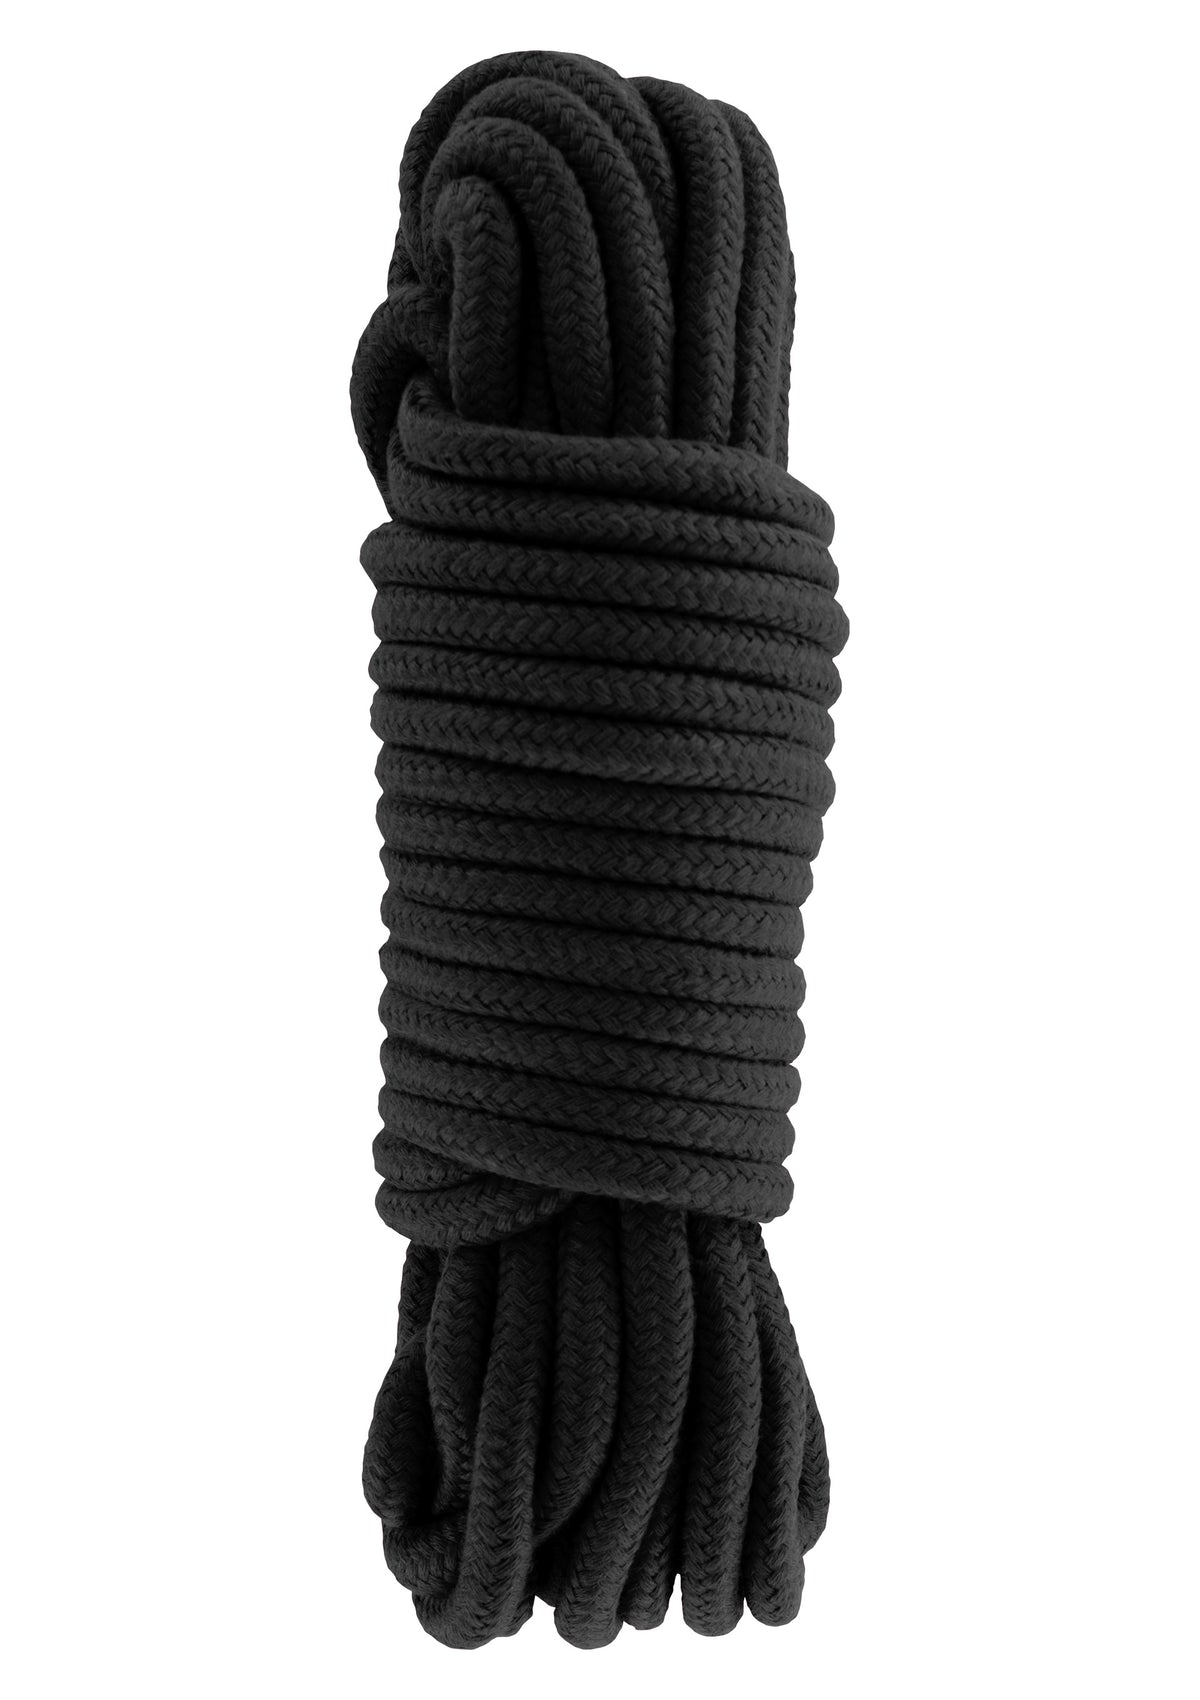 Bondage Rope 10M-erotic-world-munchen.myshopify.com